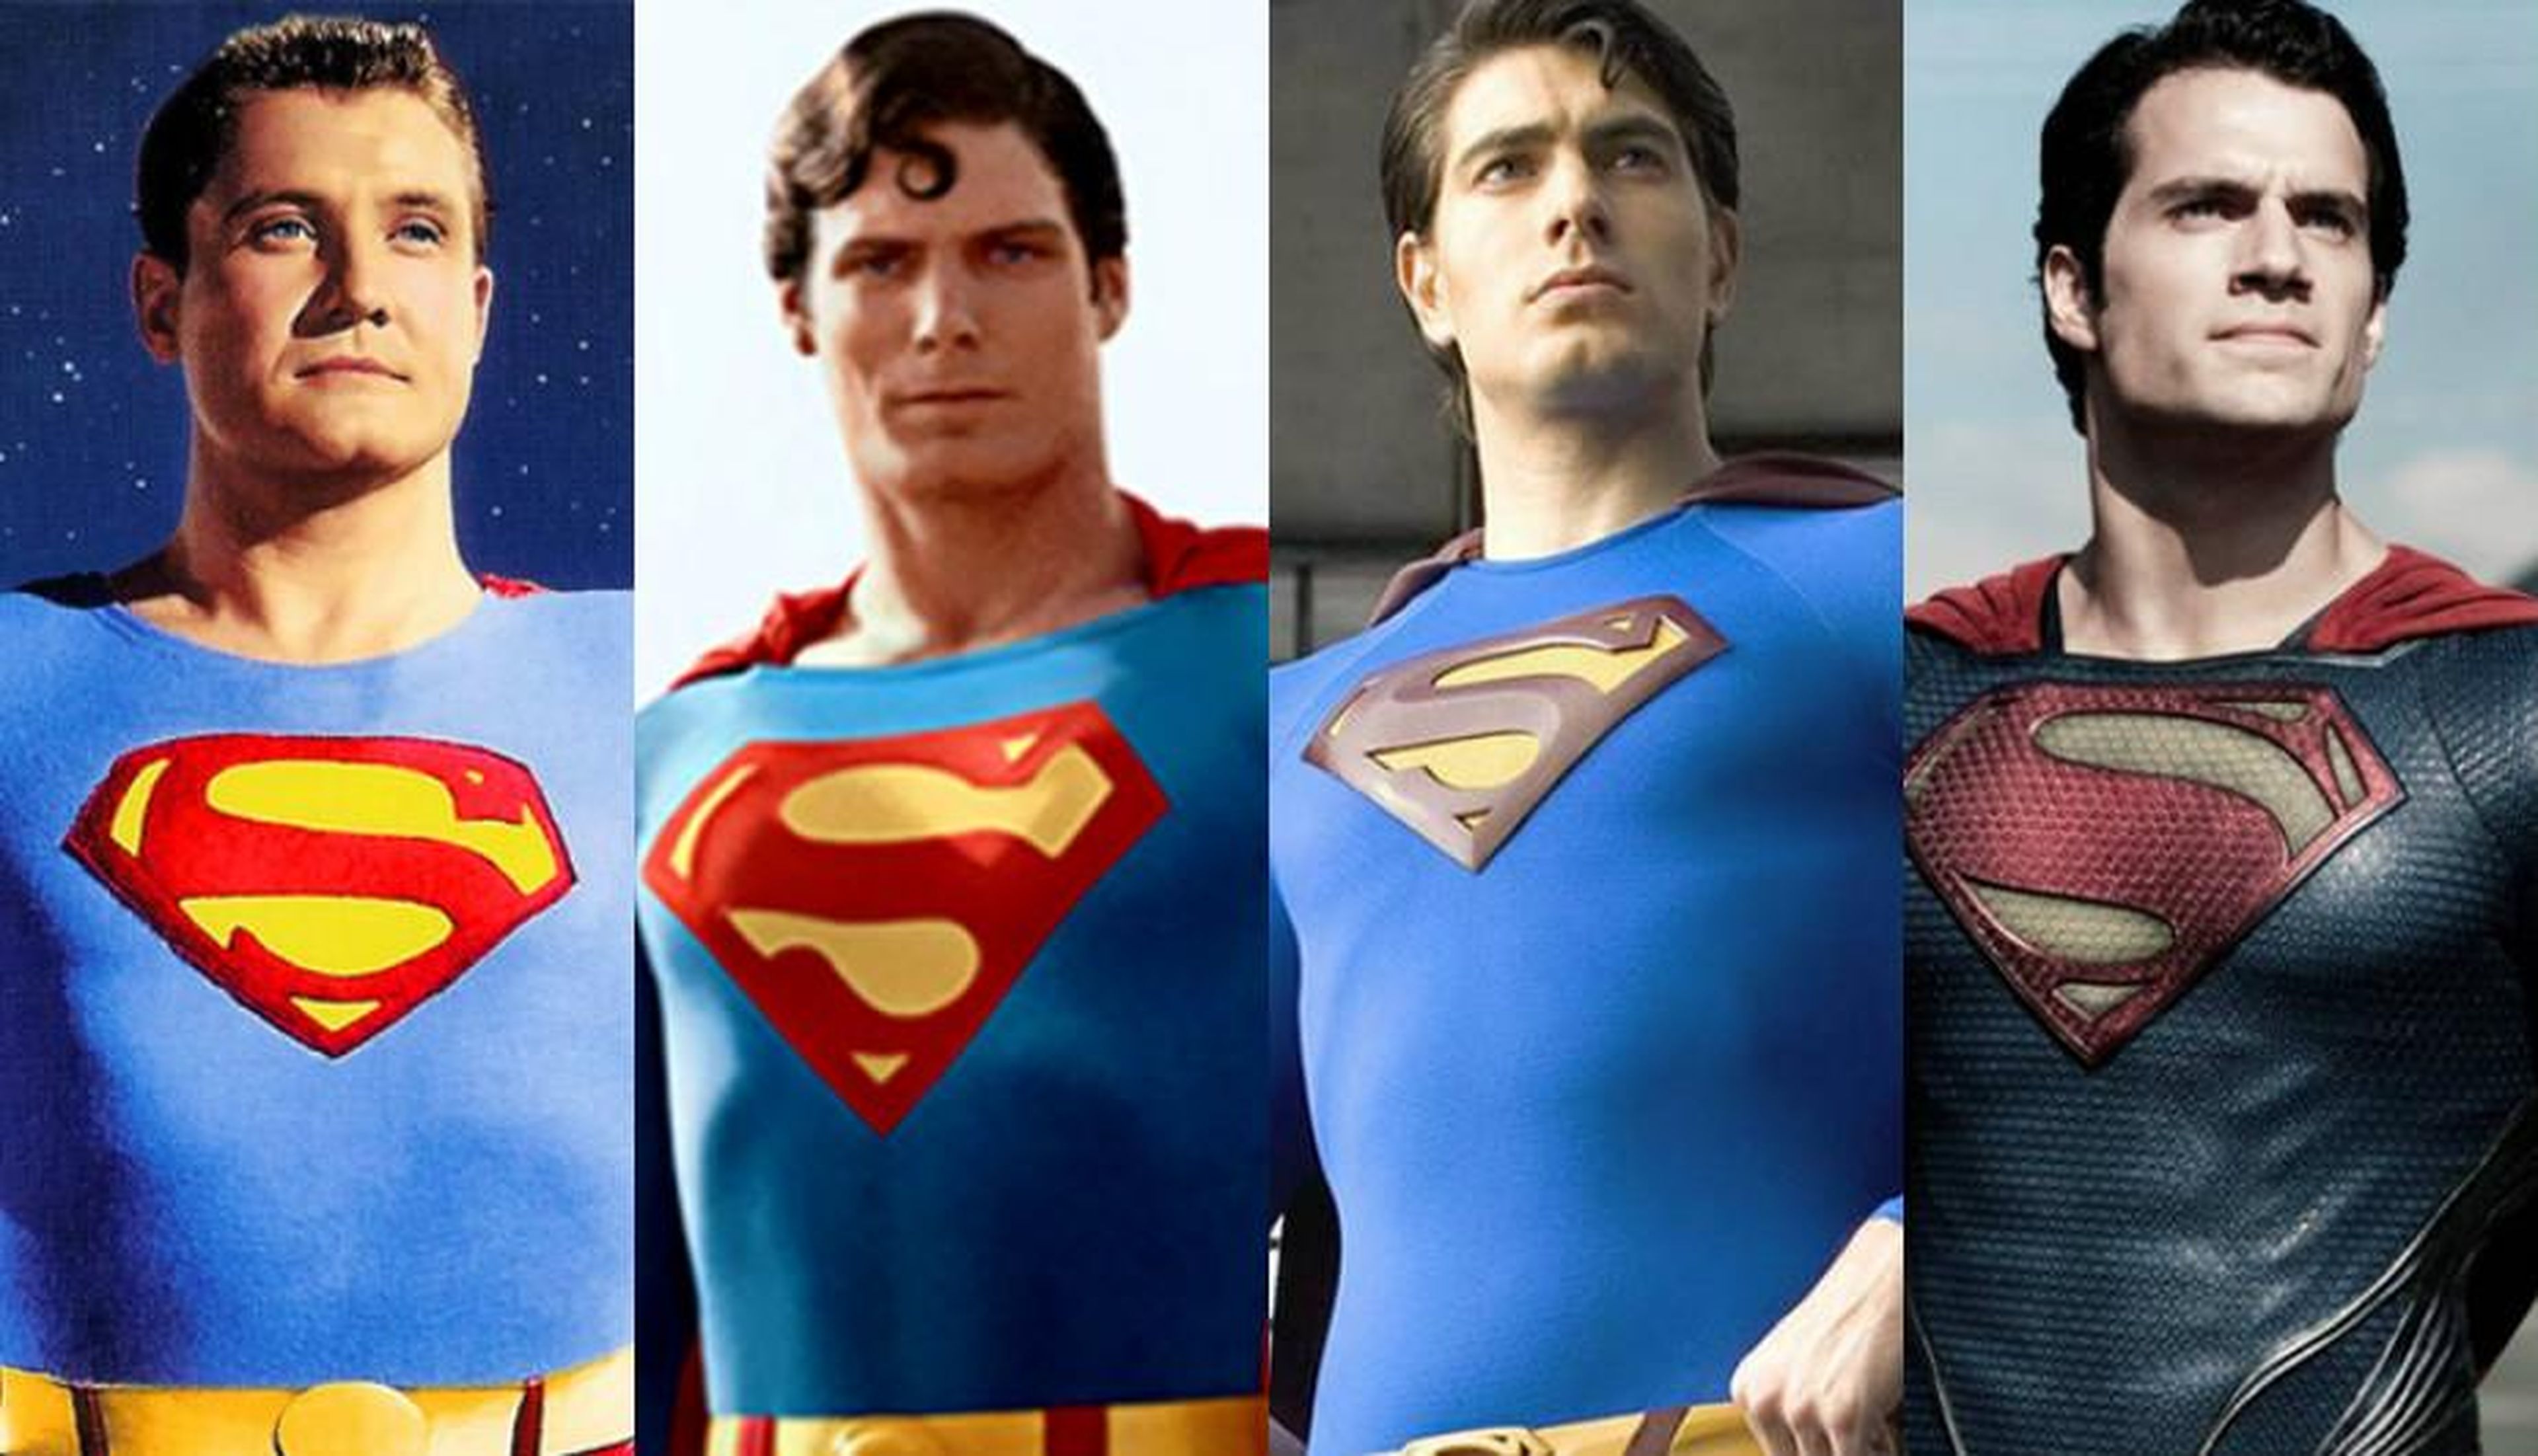 Superman - Cine y televisión